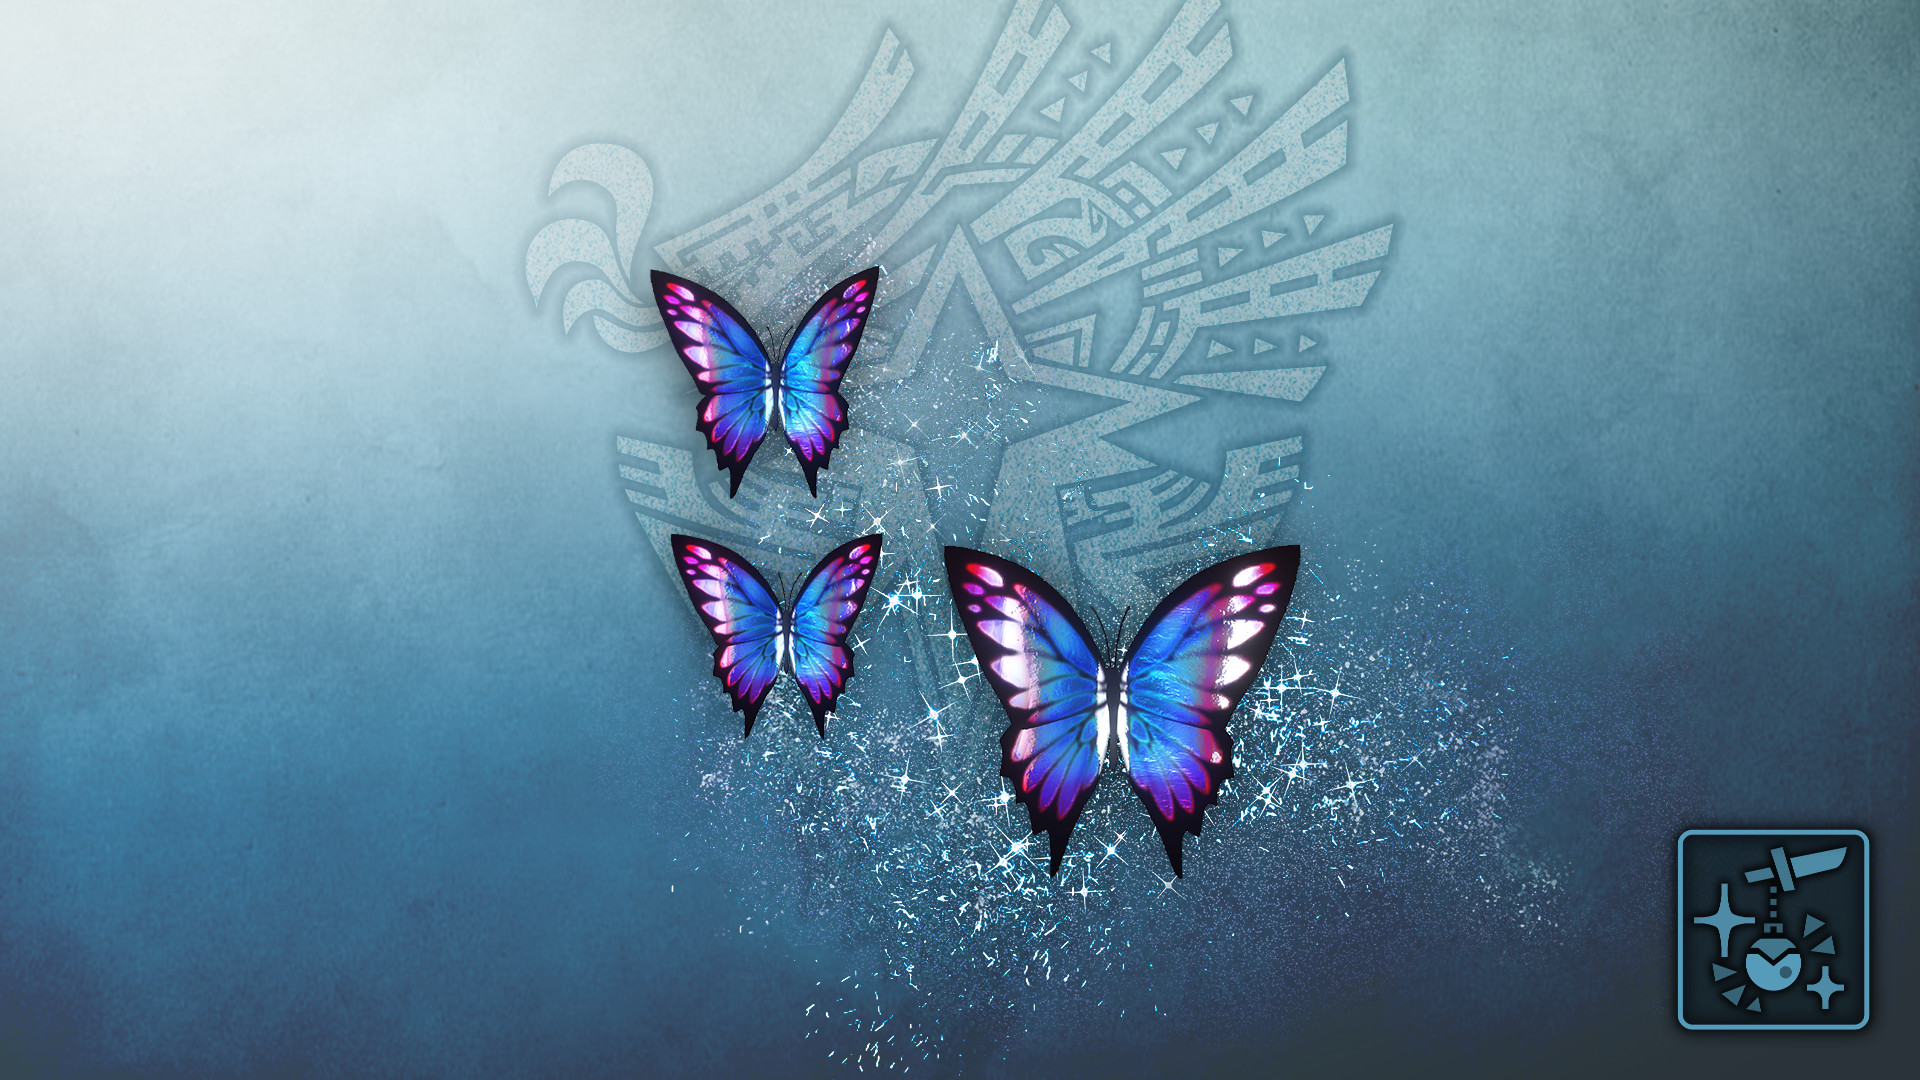 Monster Hunter World: Iceborne - Pendant: Phantom Azure Butterflies Featured Screenshot #1